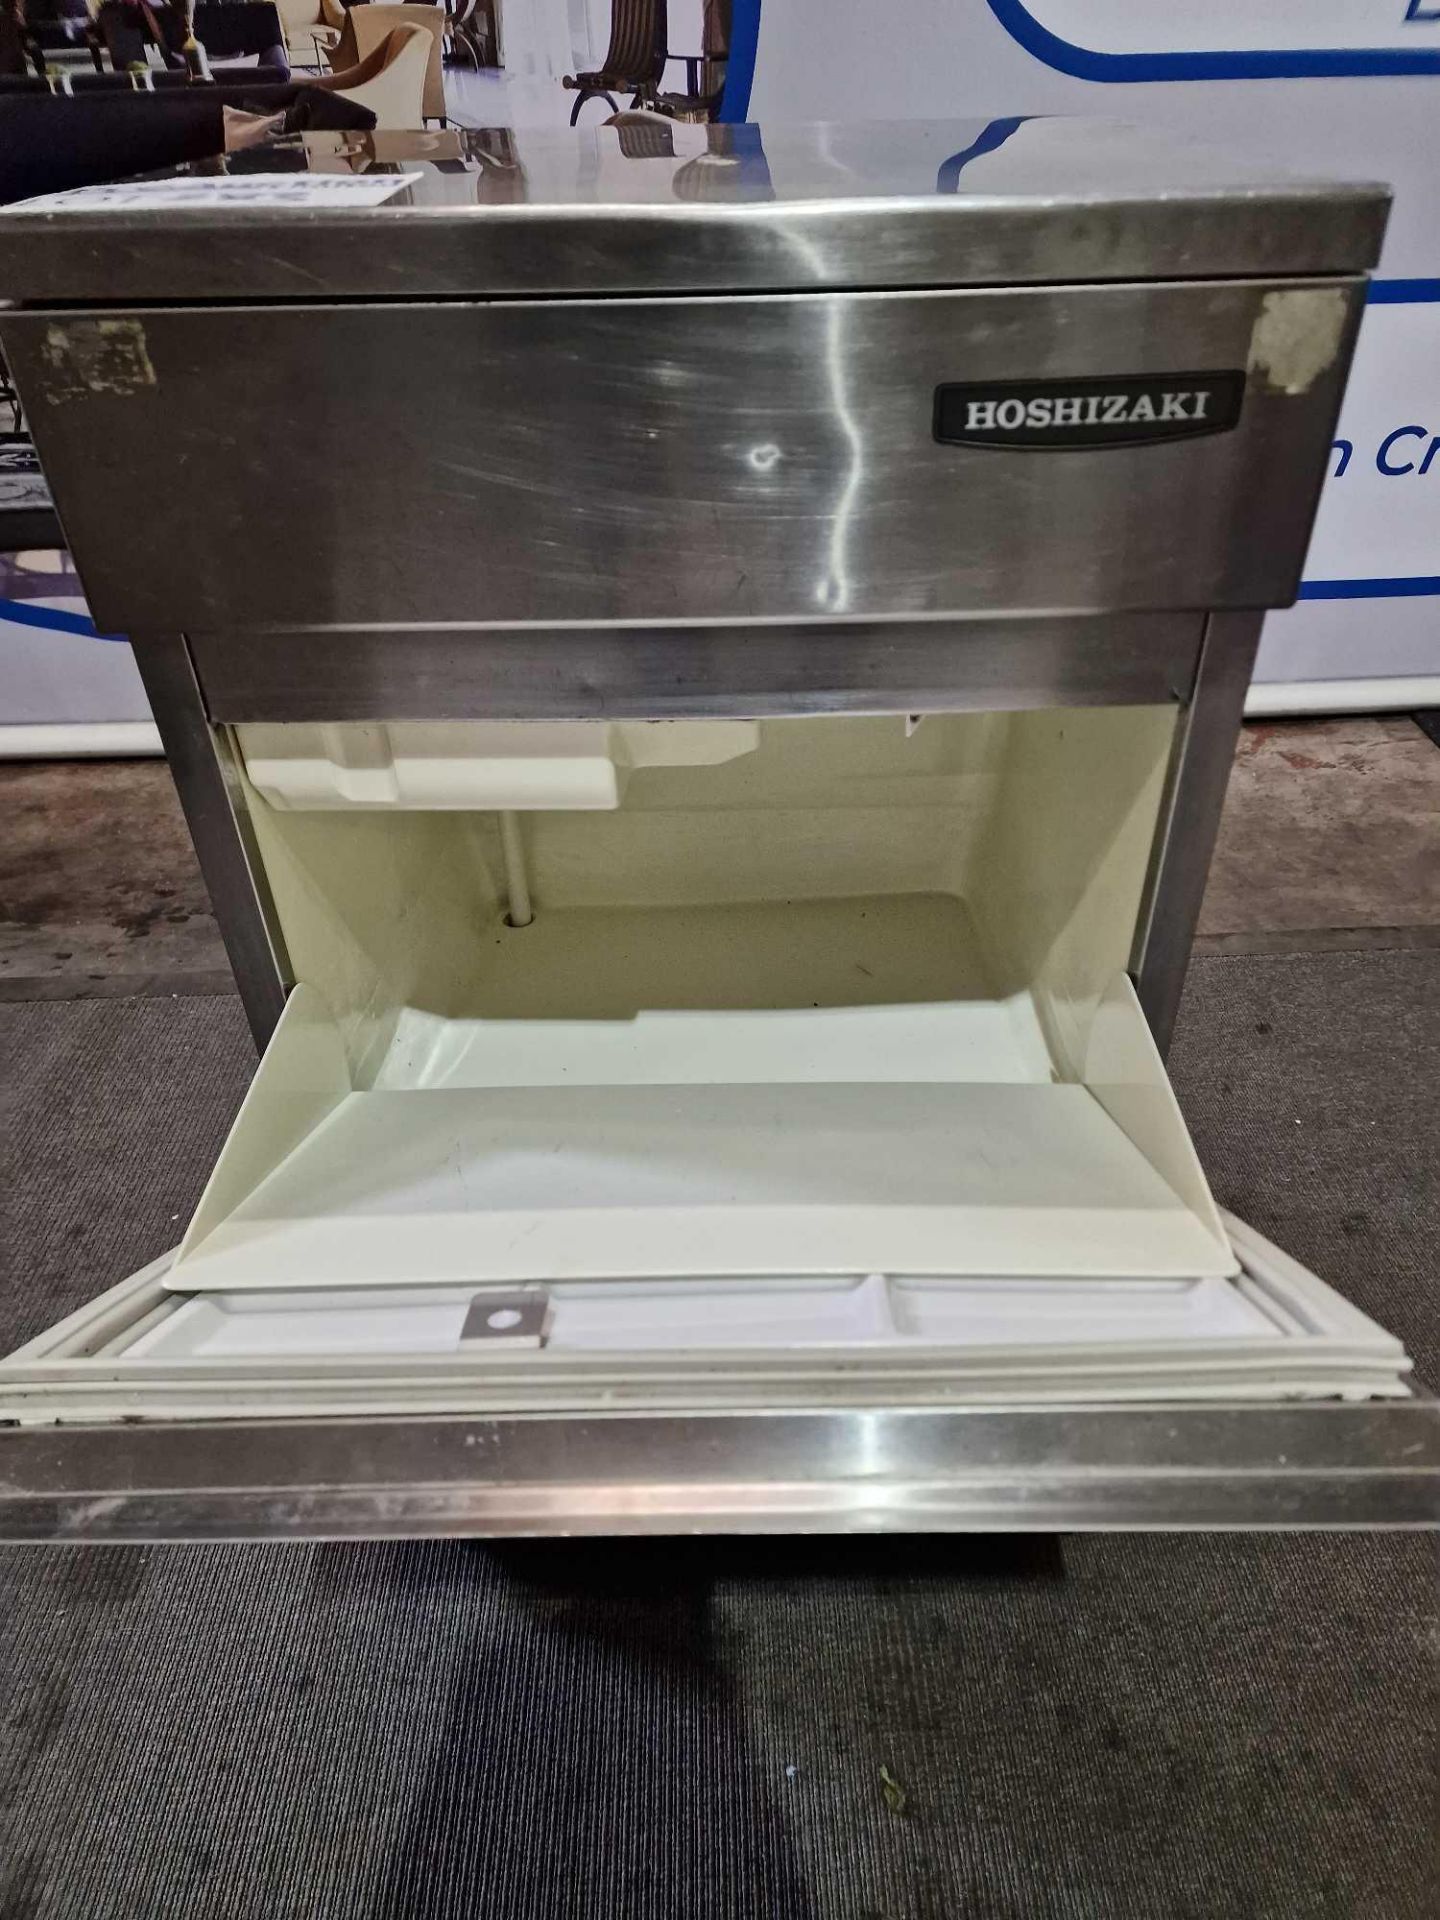 Hoshizaki Ice Machine IM45LE-25 44kg Ice Per 24 Hours 18kg Storage 240v Single Phase Stainless Steel - Image 3 of 3